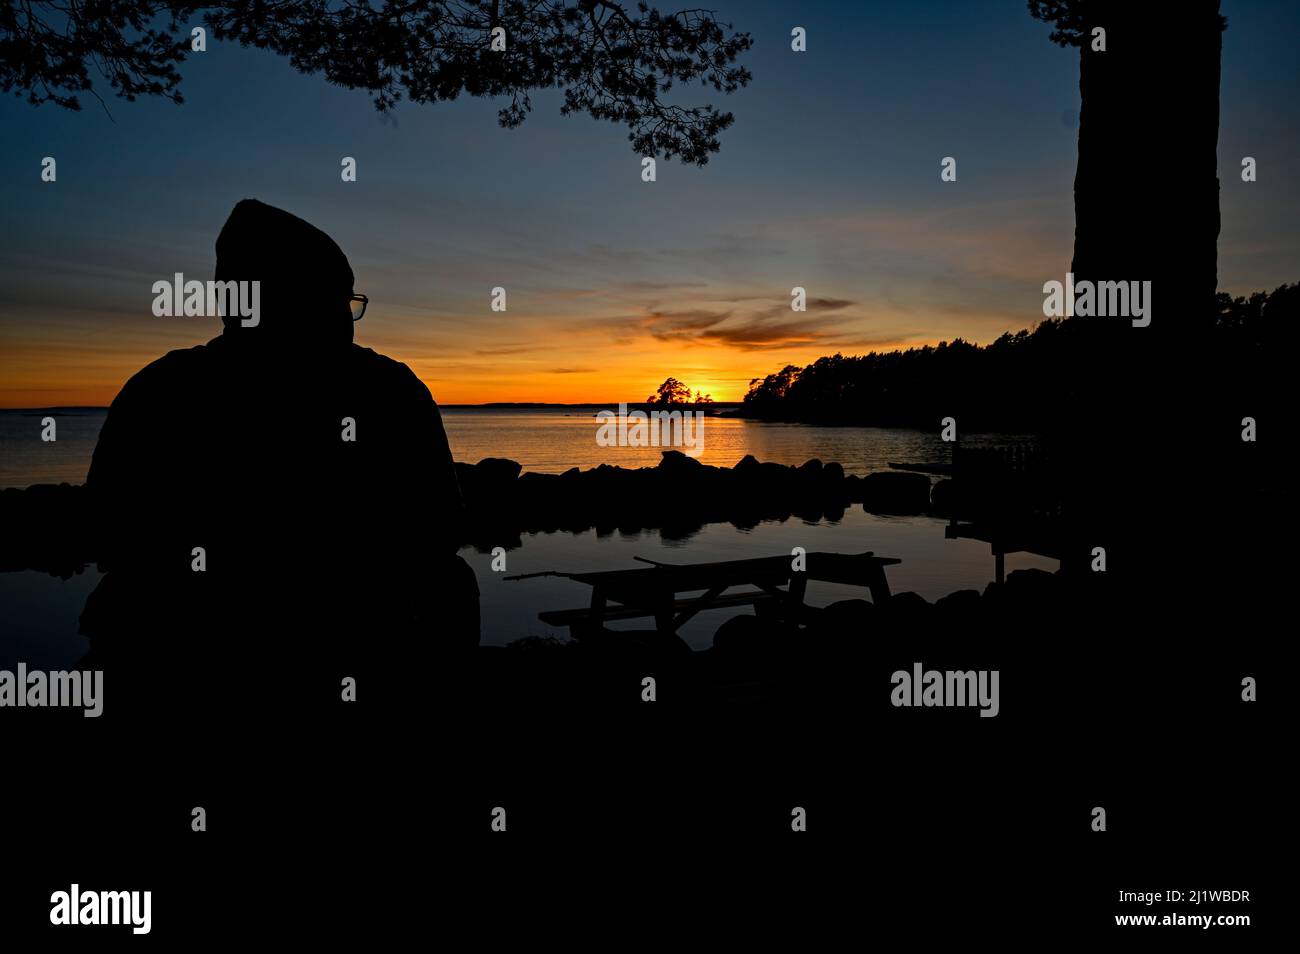 Man sitting overlooking sunset over lake Vattern Stock Photo